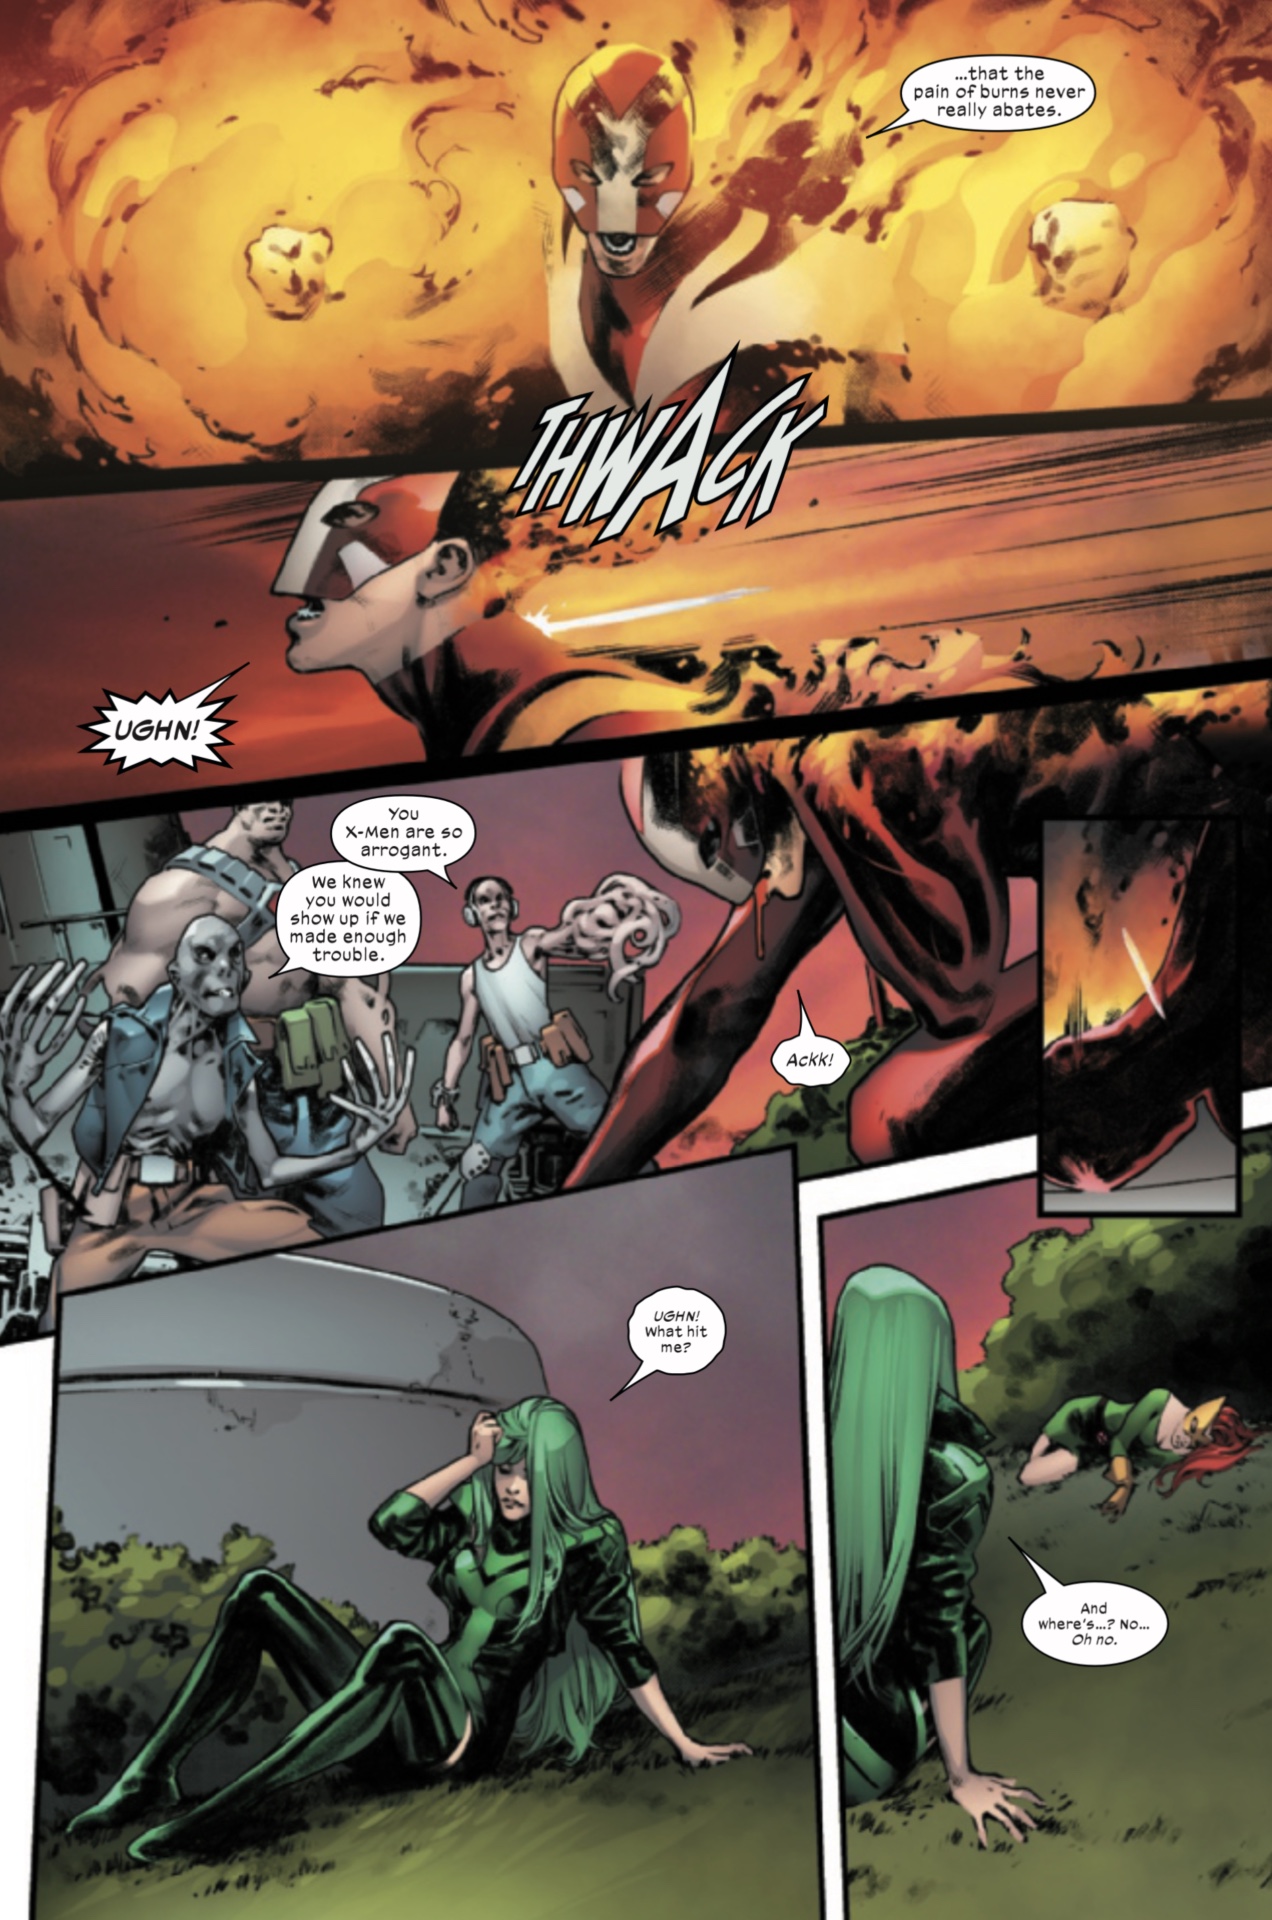 X-Men #5 ön izleme sayfası